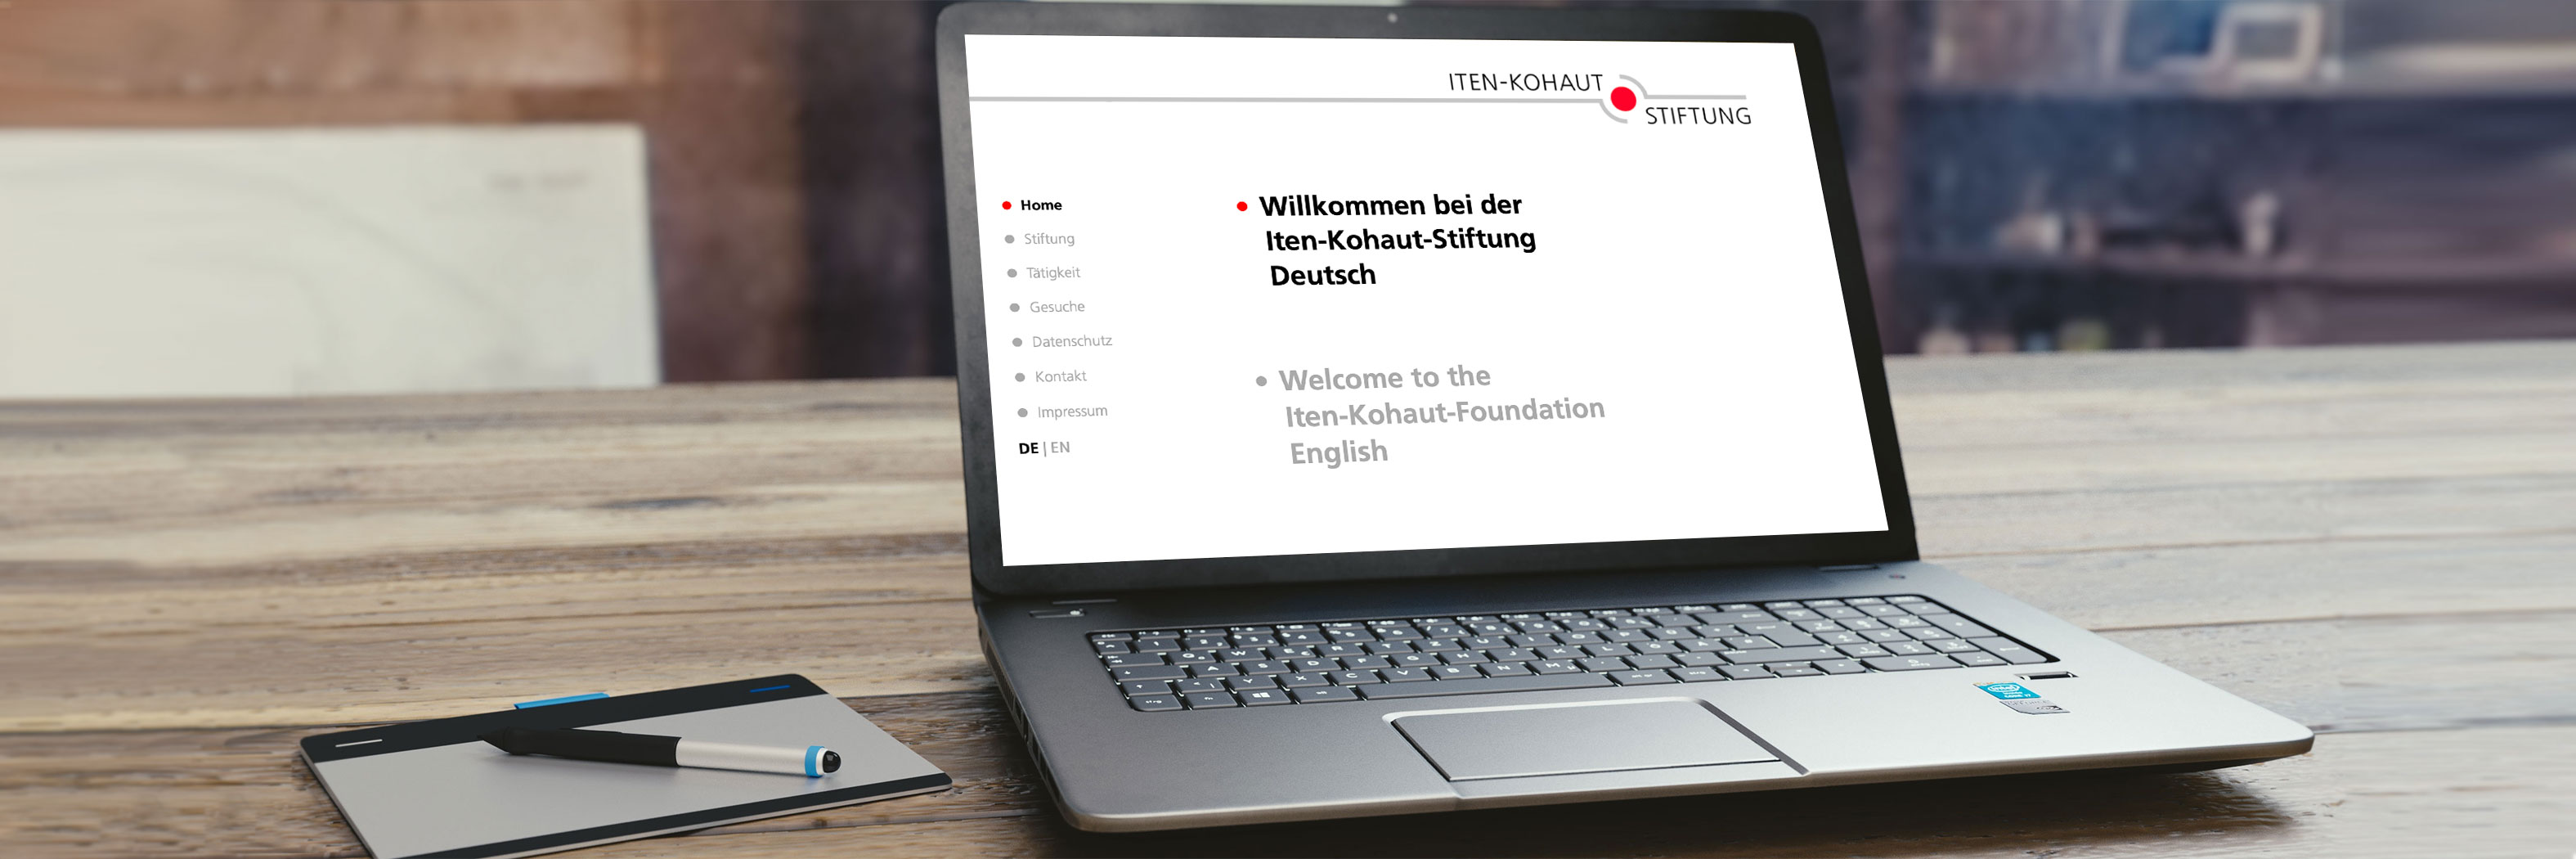 Iten Kohaut Stiftung website